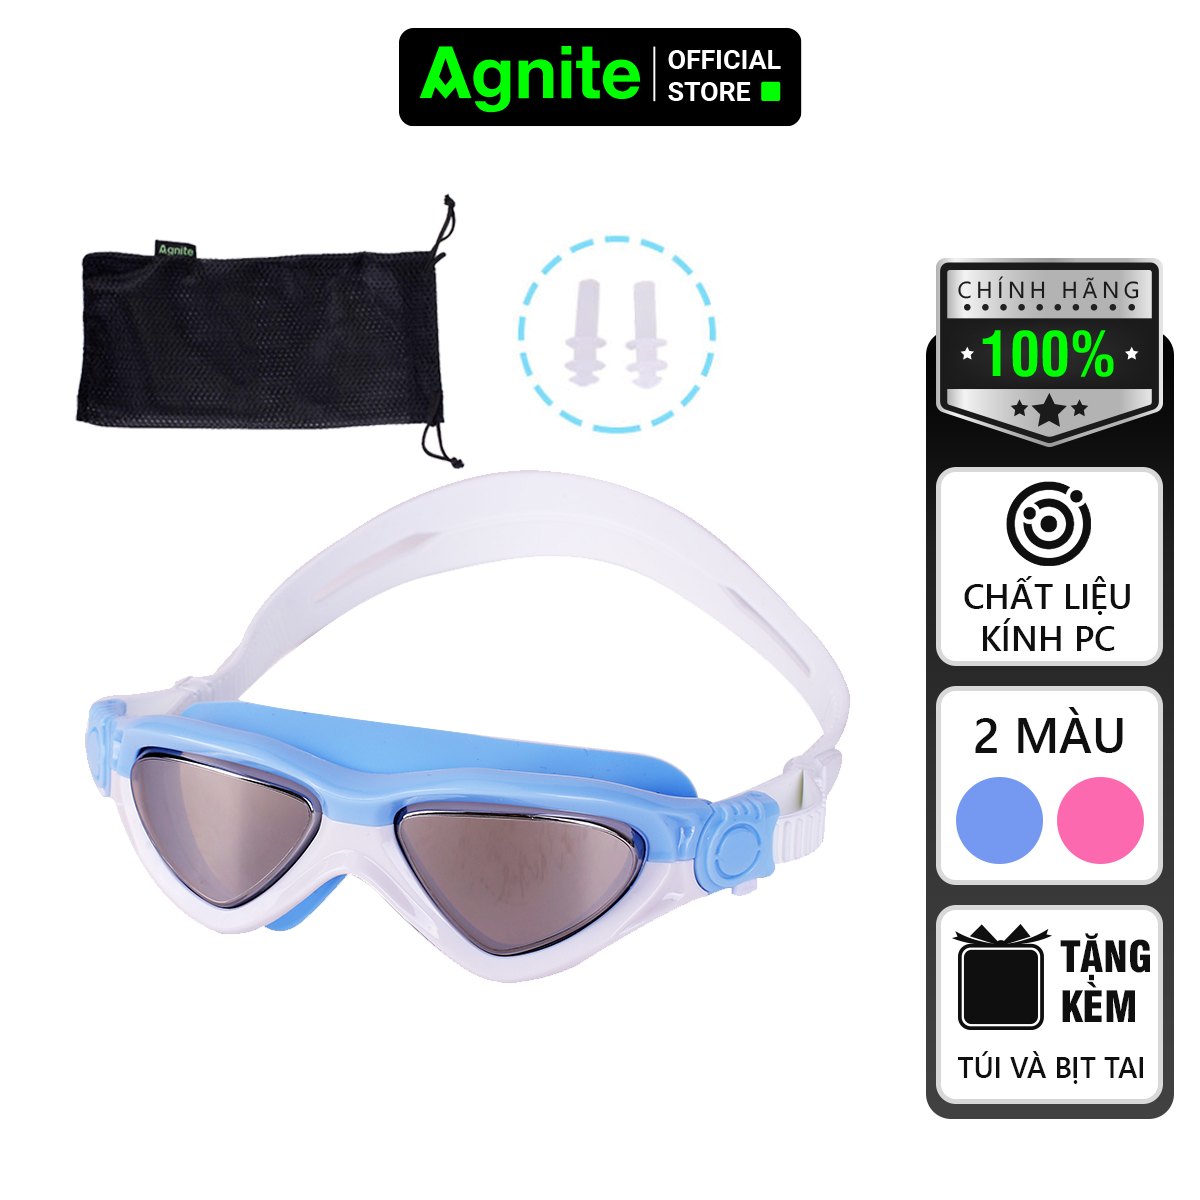 Kính bơi tráng bạc chống tia UV cho trẻ em Agnite tặng nút bịt tai túi